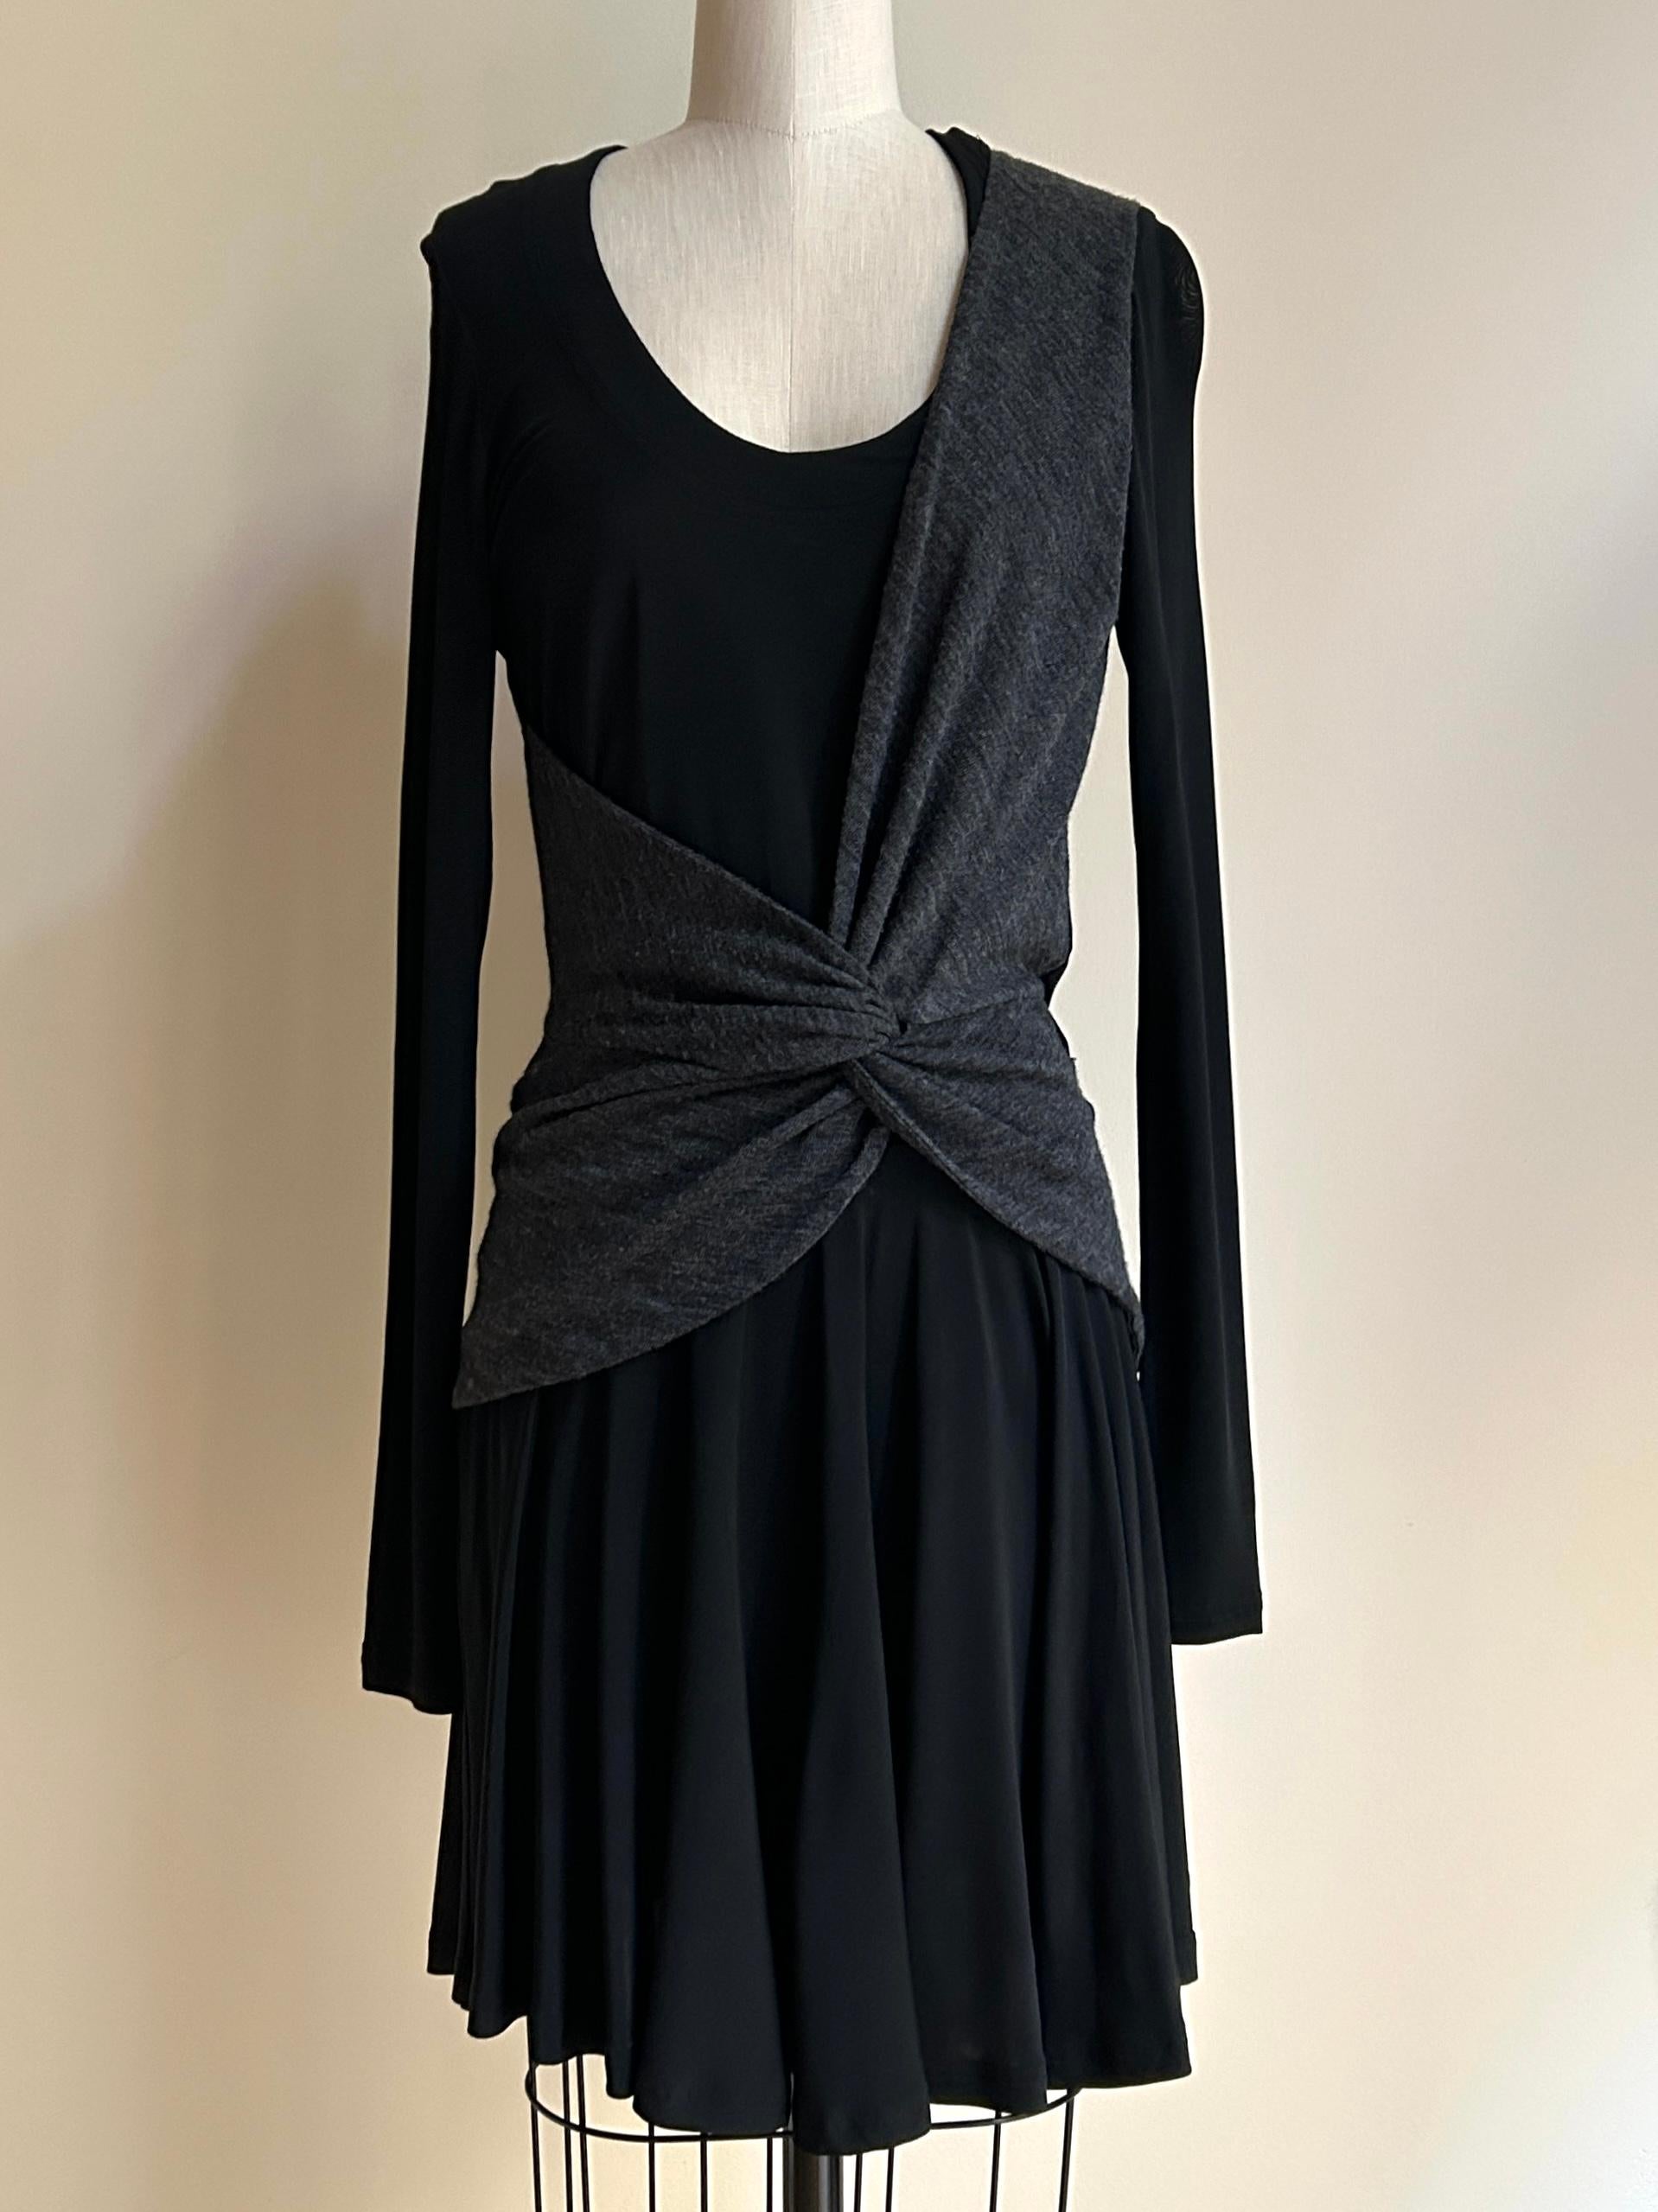 Das schwarze Jersey-Kleid von Balenciaga 2004 by Nicolas Ghesquiere ist mit einem anthrazitfarbenen Wickelmuster versehen, das von der Trainingskleidung einer Ballerina inspiriert ist. Rundhalsausschnitt, lange Ärmel.

95% Acetat, 5% Elasthan. 
Das